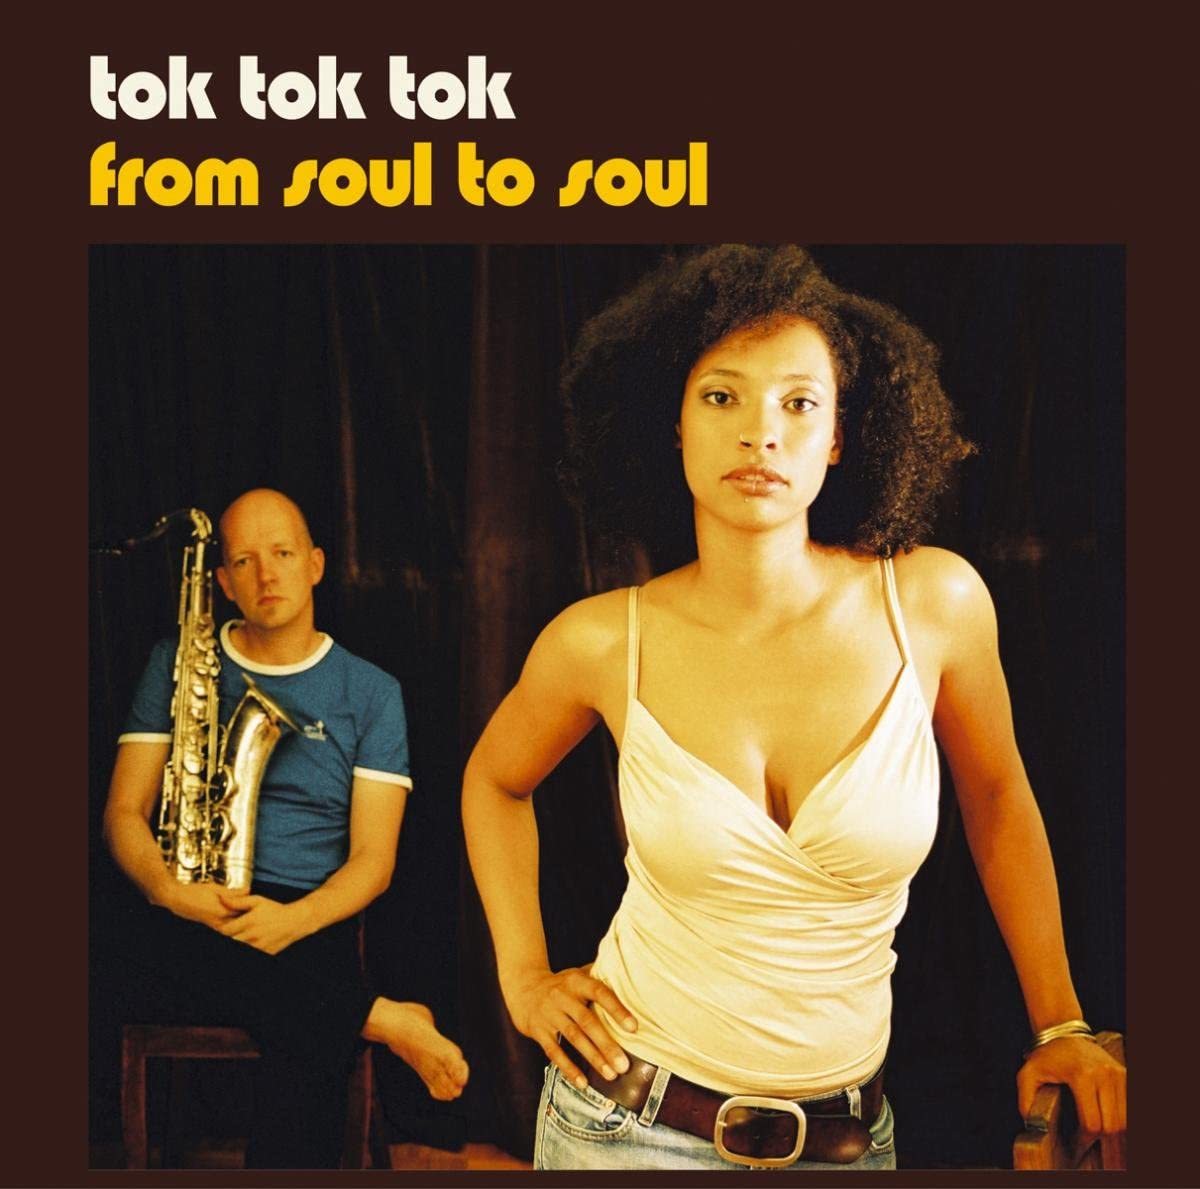 超値下げ★ これはなかなかのめっけもん。ドイツのユニット、トク・トク・トクの新作。 From Soul to Soul [輸入盤LP2枚組] TOK TOK TOK